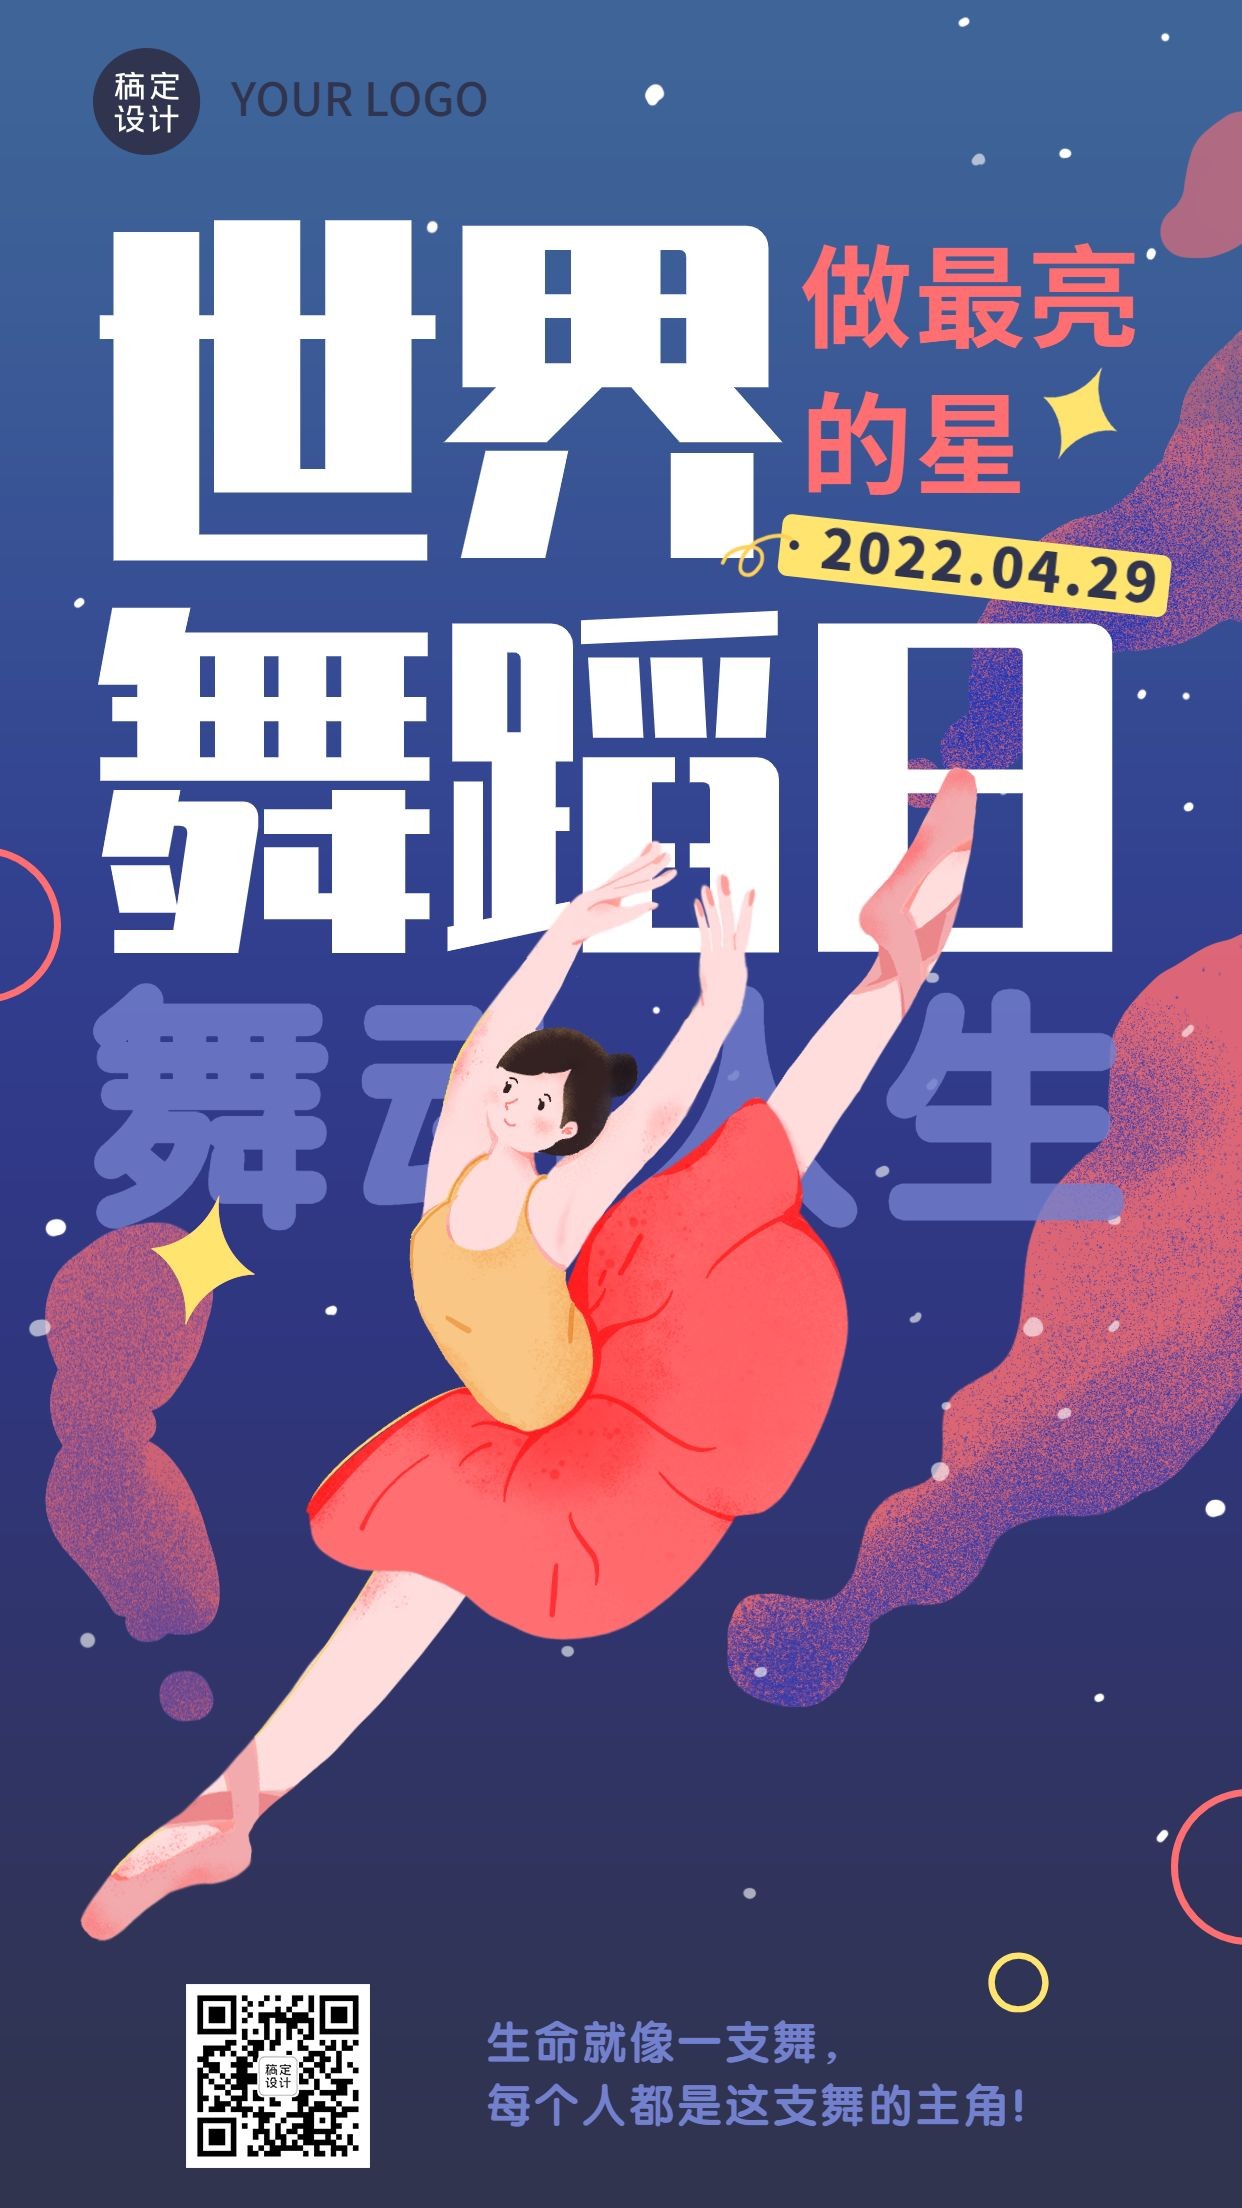 世界舞蹈日节日宣传插画手机海报预览效果